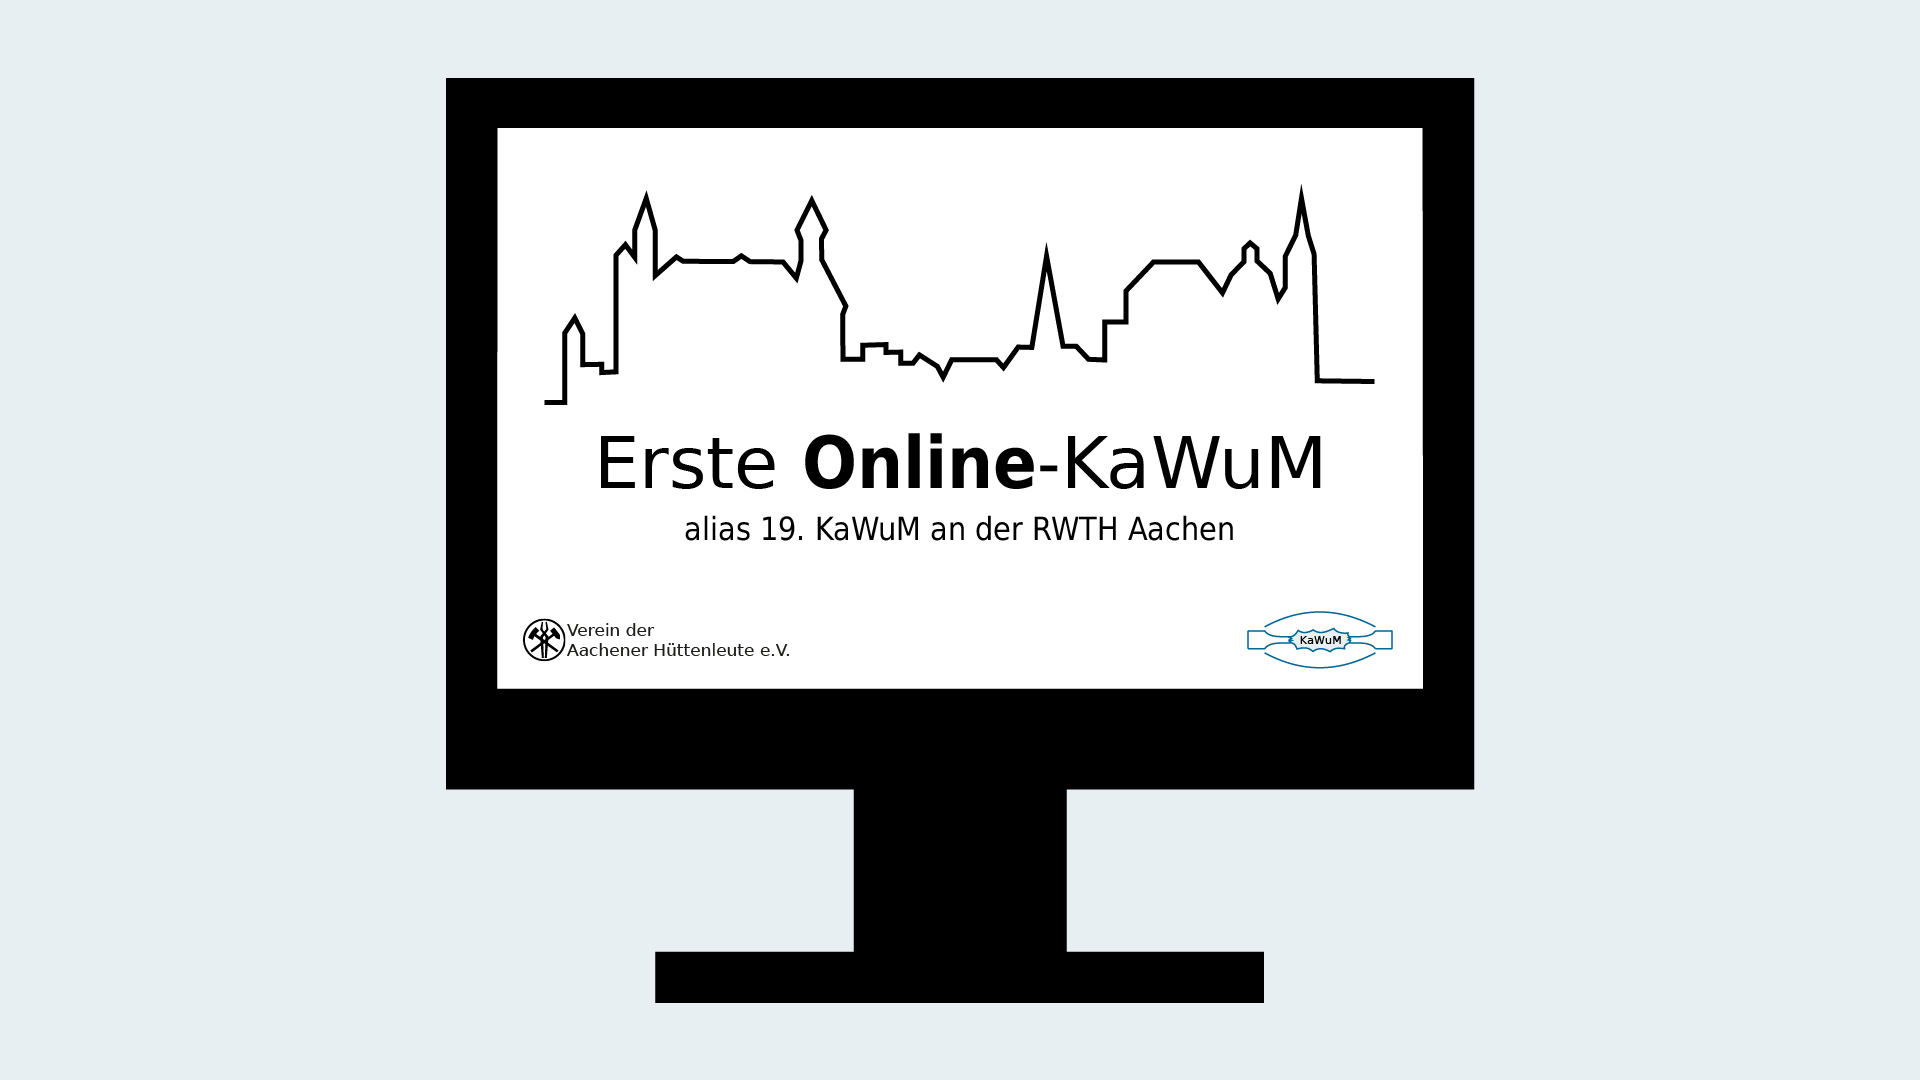 Erste Online-KaWuM